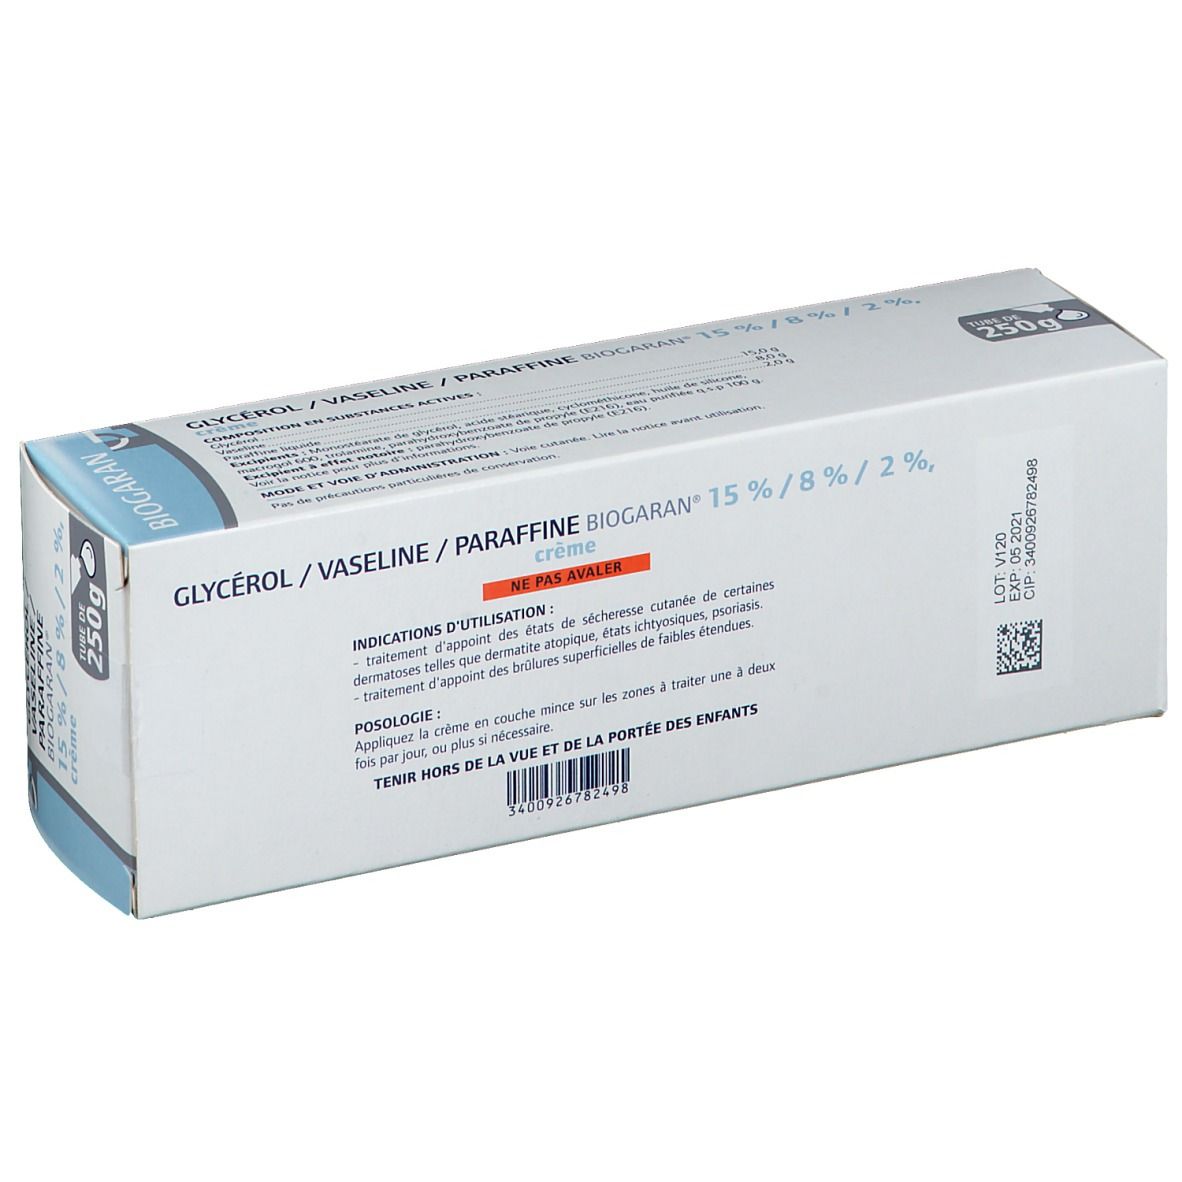 BIOGARAN® Glycérol/ Vaseline/ Paraffine 15% / 8% / 2% ...